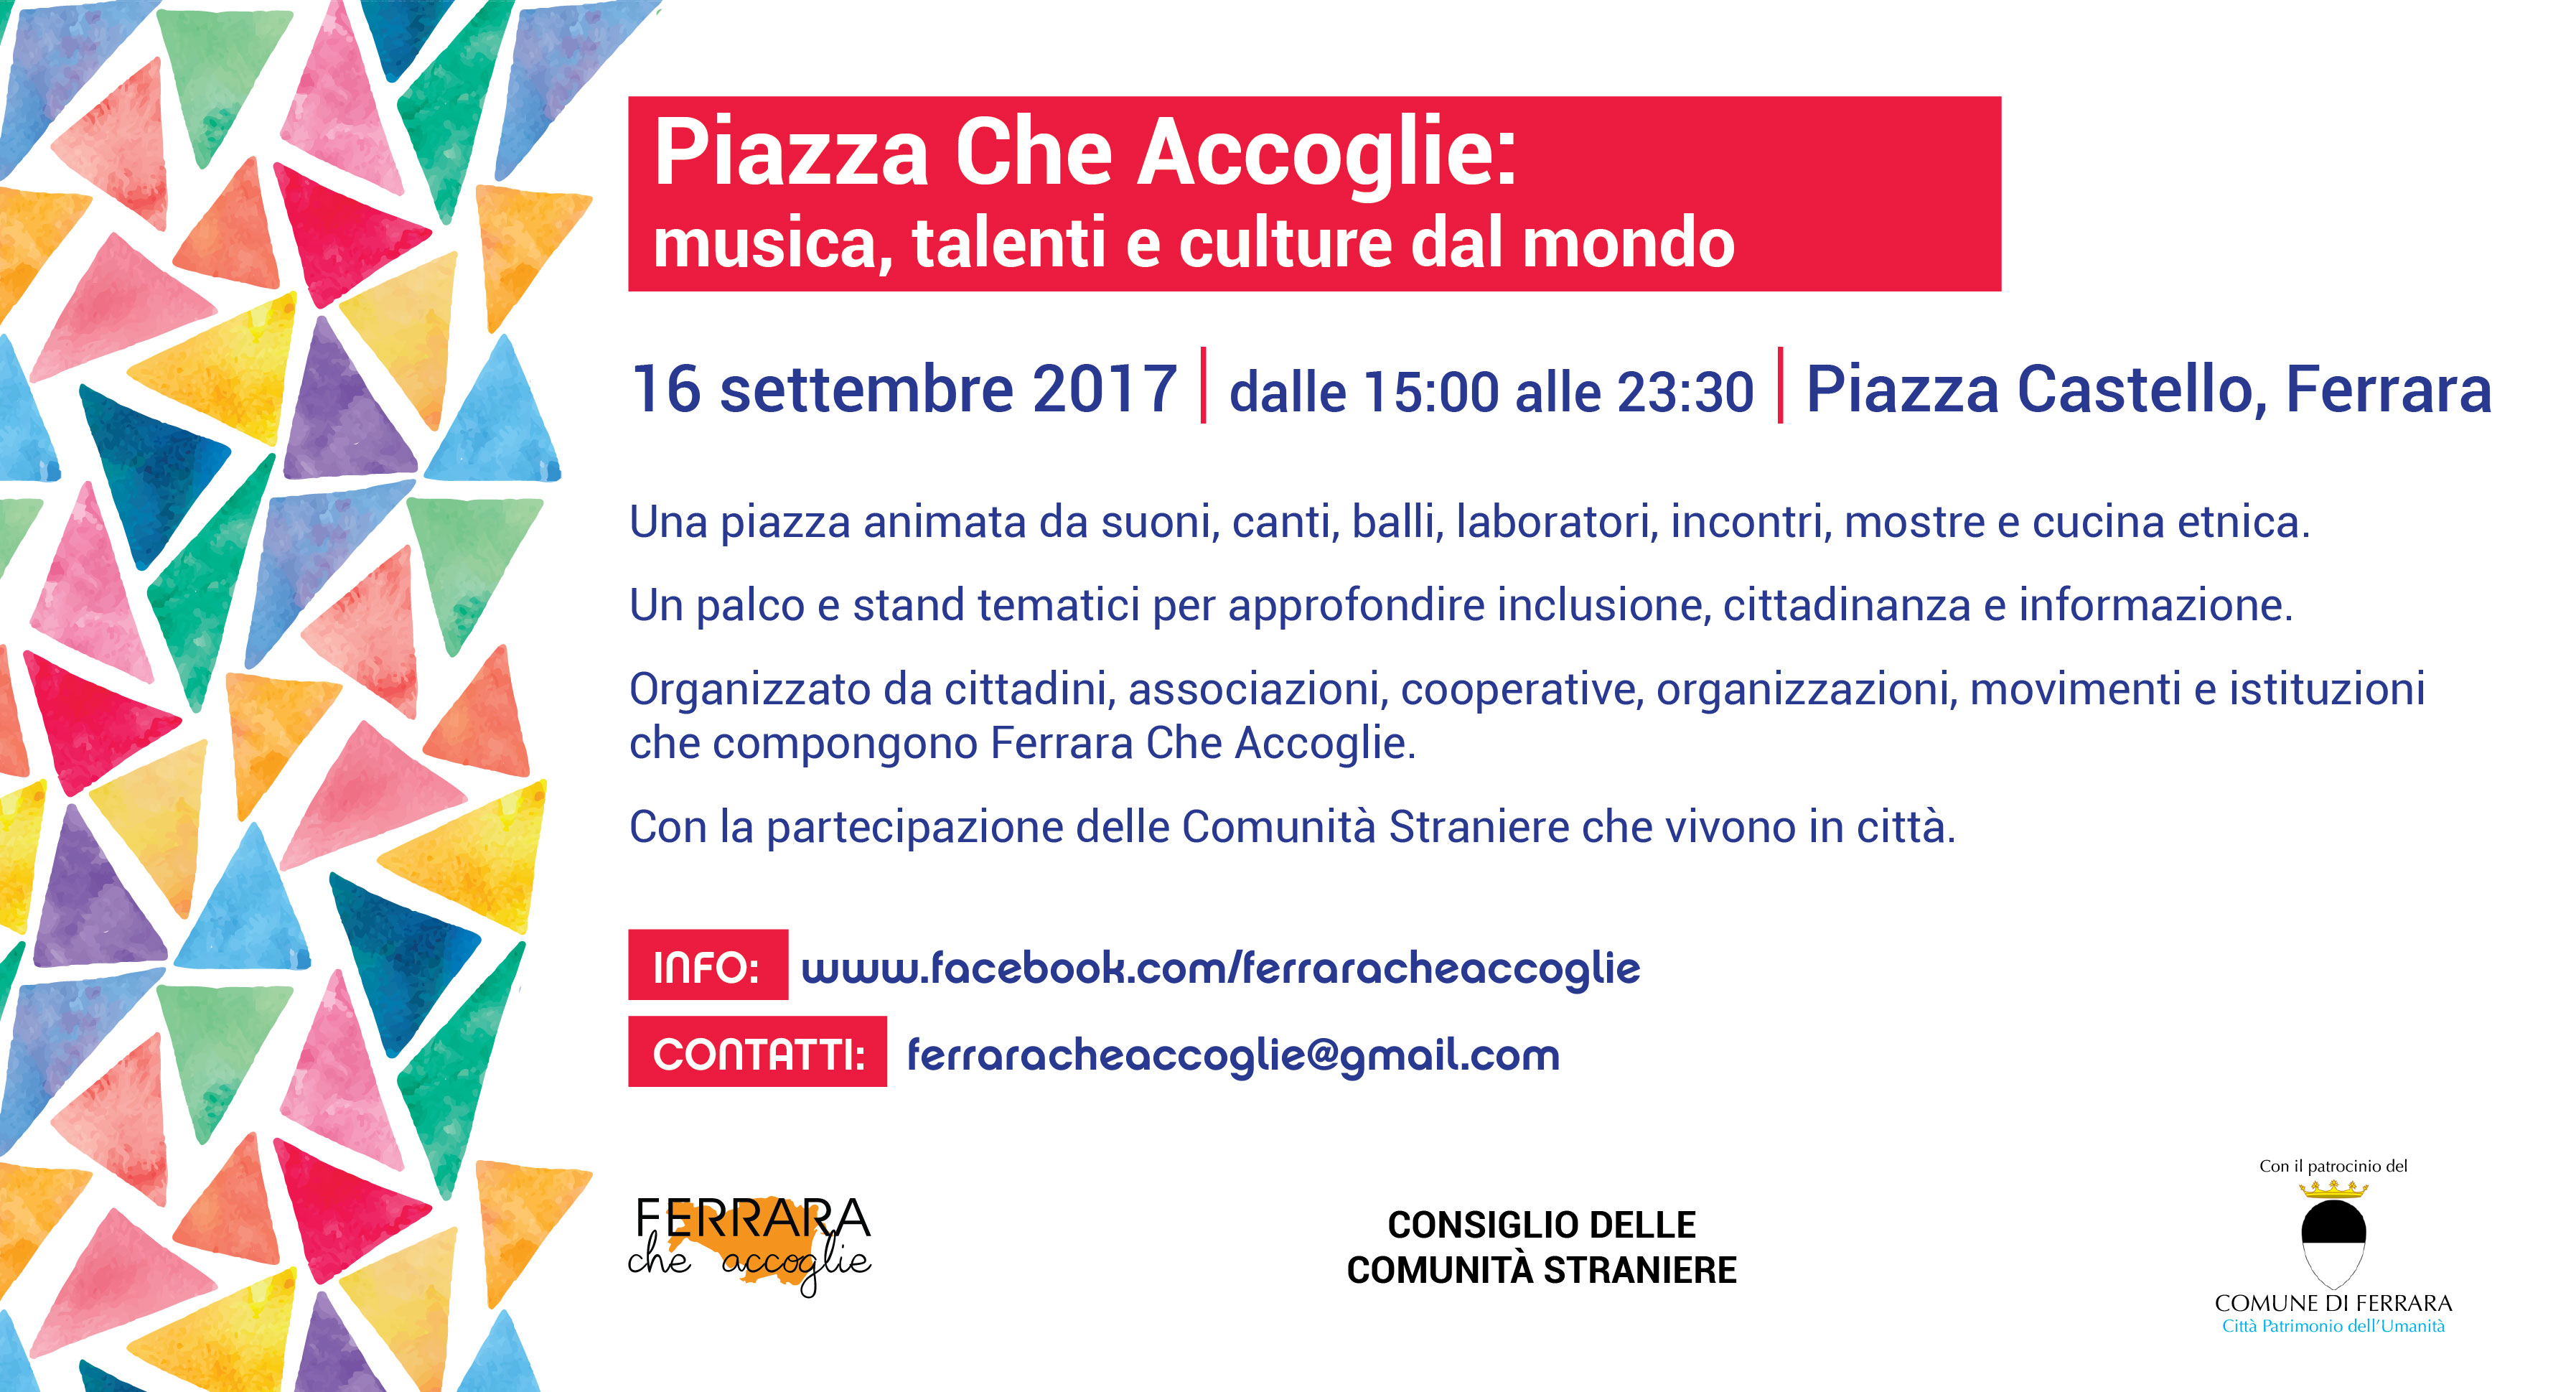 PiazzaCheAccoglie invito 2017